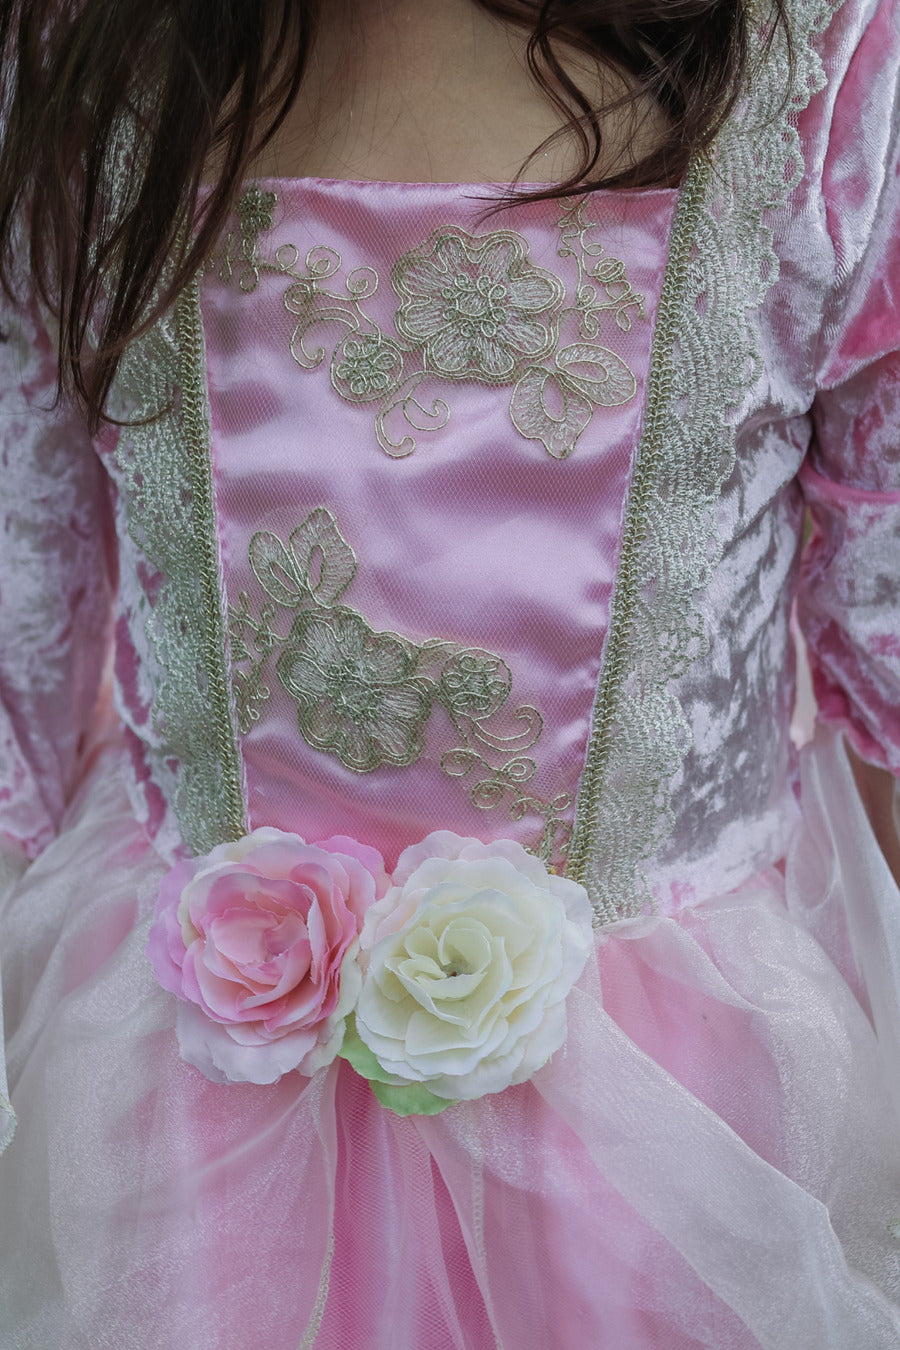 Pink Rose Princess Dress (Size 5-6)